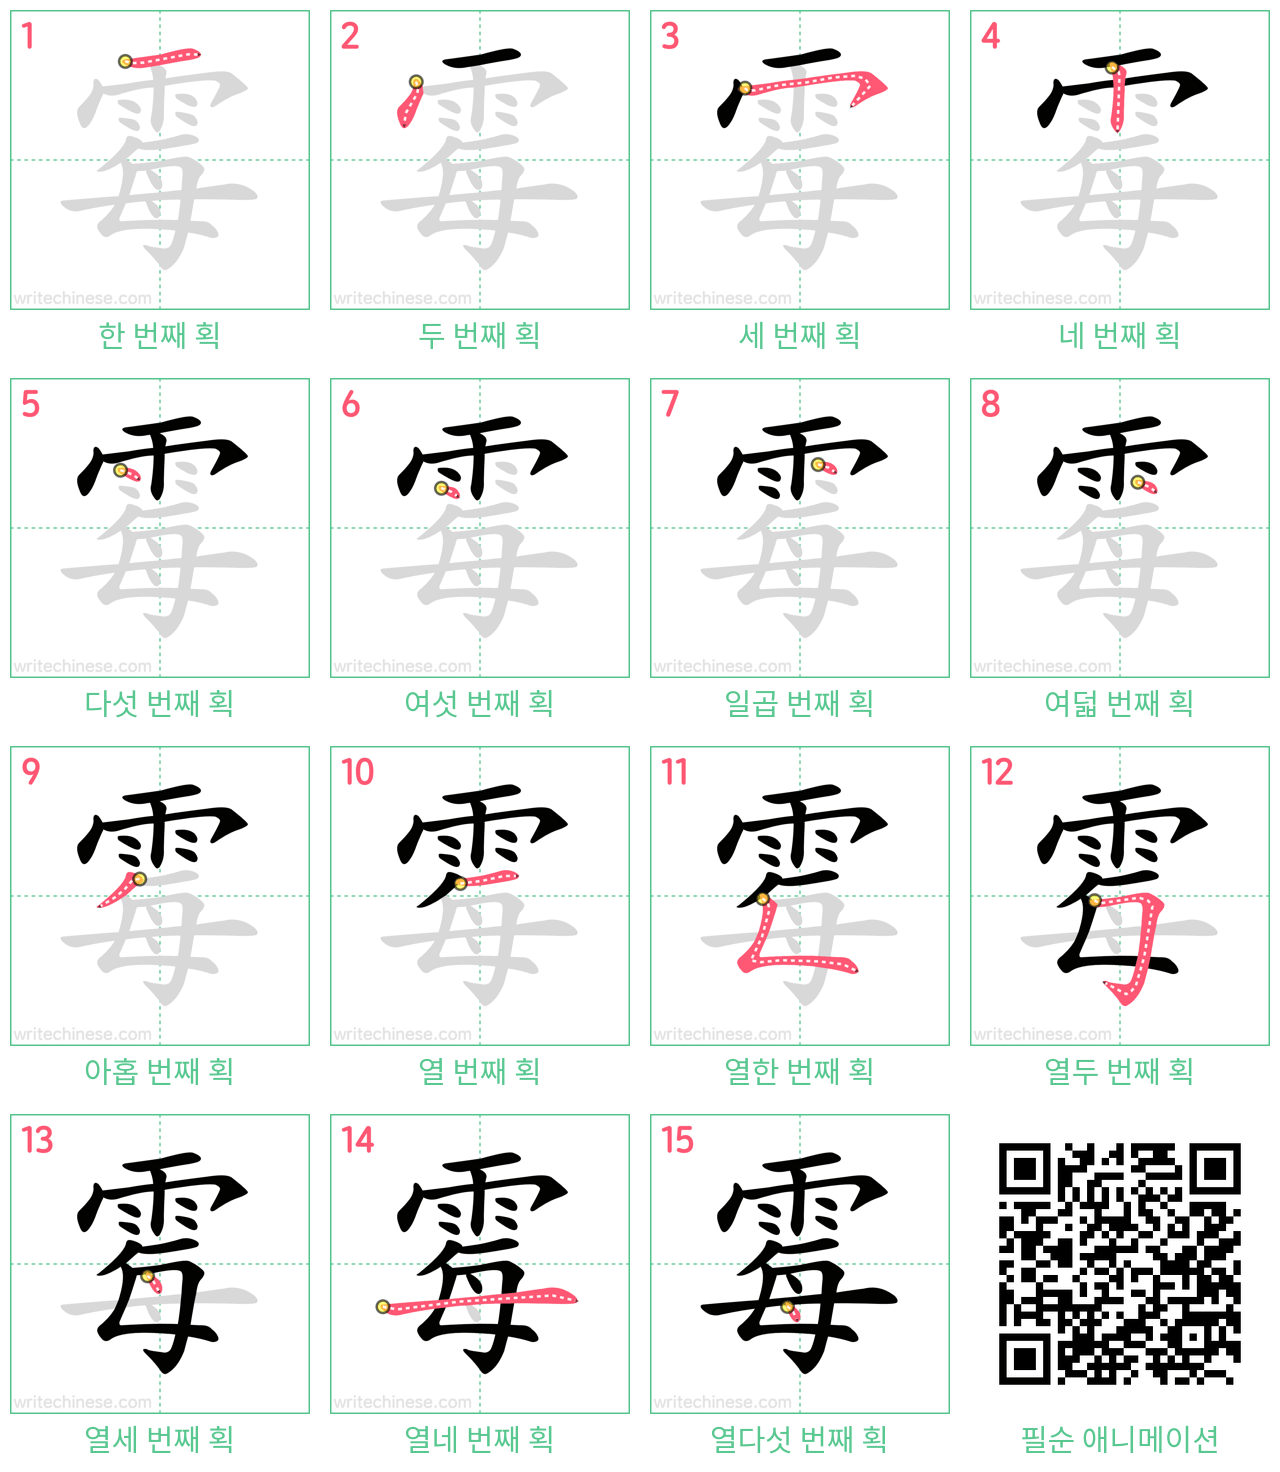 霉 step-by-step stroke order diagrams